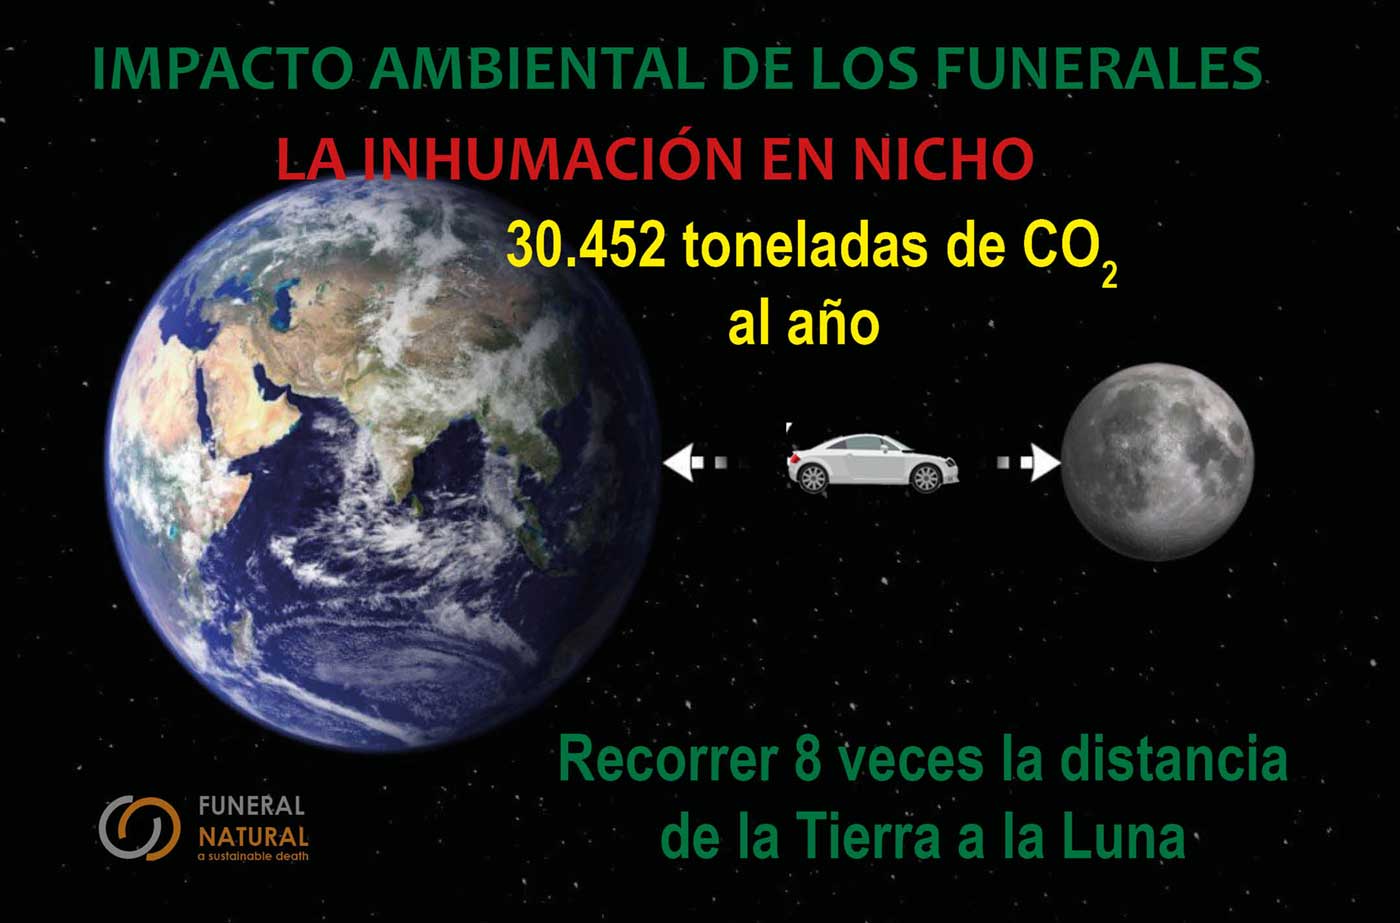 Impacto ambiental de la inhumación en nicho. Gráfico: Funeral Natural